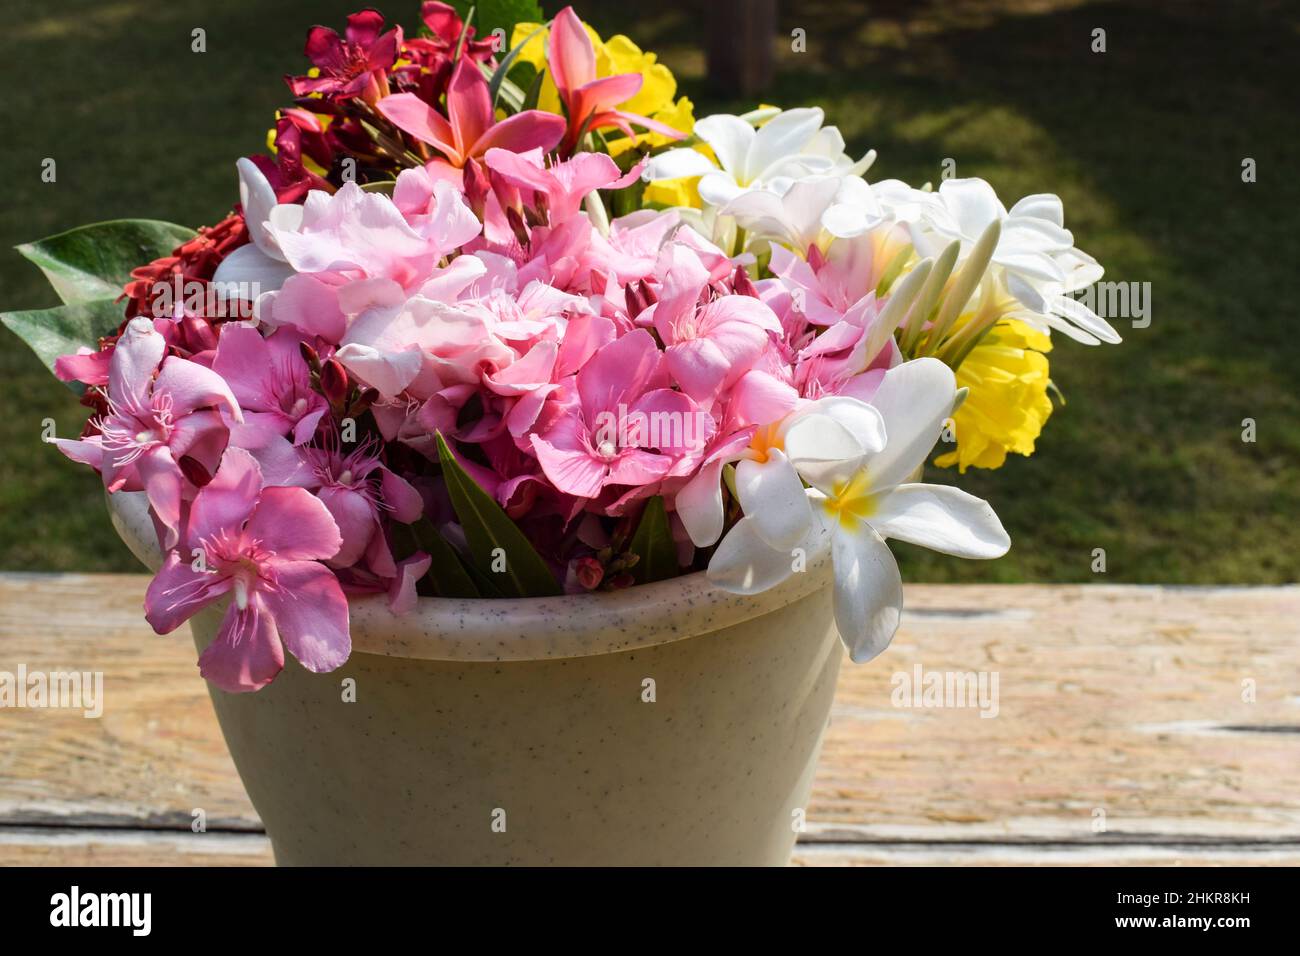 Fleurs multicolores différents types de couleurs et de fleurs dans le seau d'eau.Frangipani blanc, oléandres, kaner, champa au fleuriste Banque D'Images